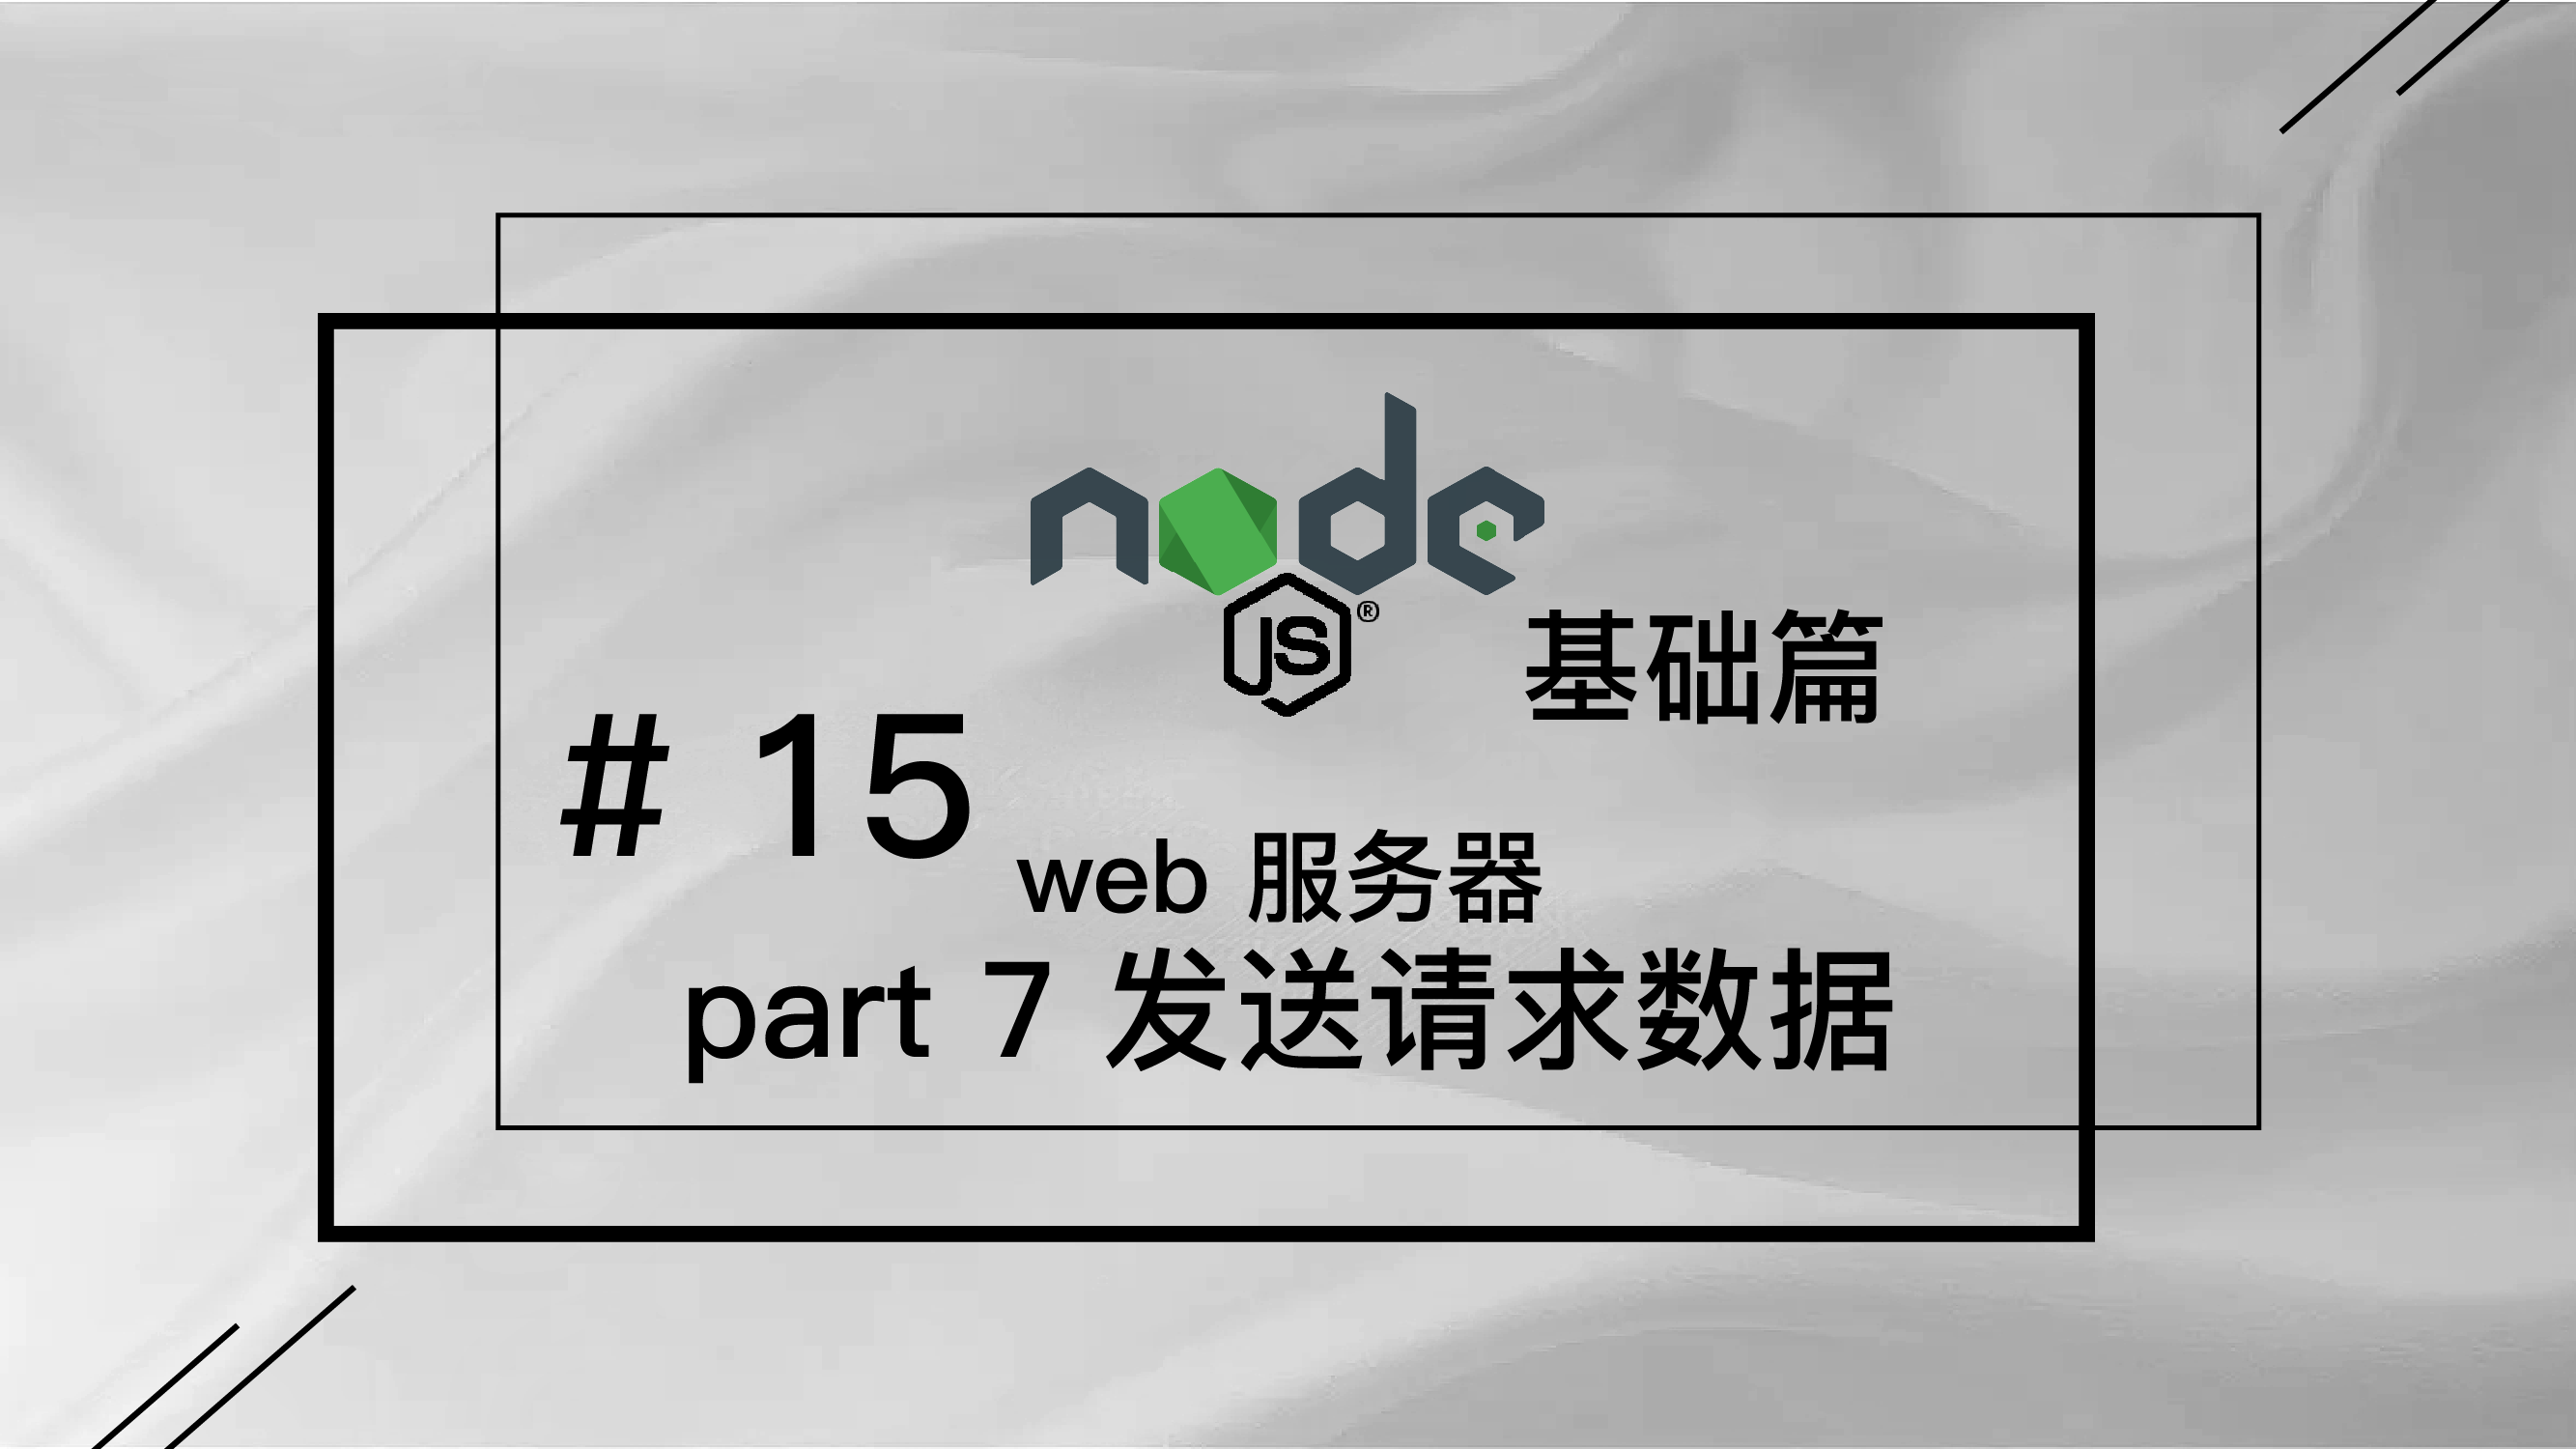 轻松学 Node.js - 基础篇免费视频教程 #15 web 服务器 part 7 使用 GET 或 POST 请求发送数据